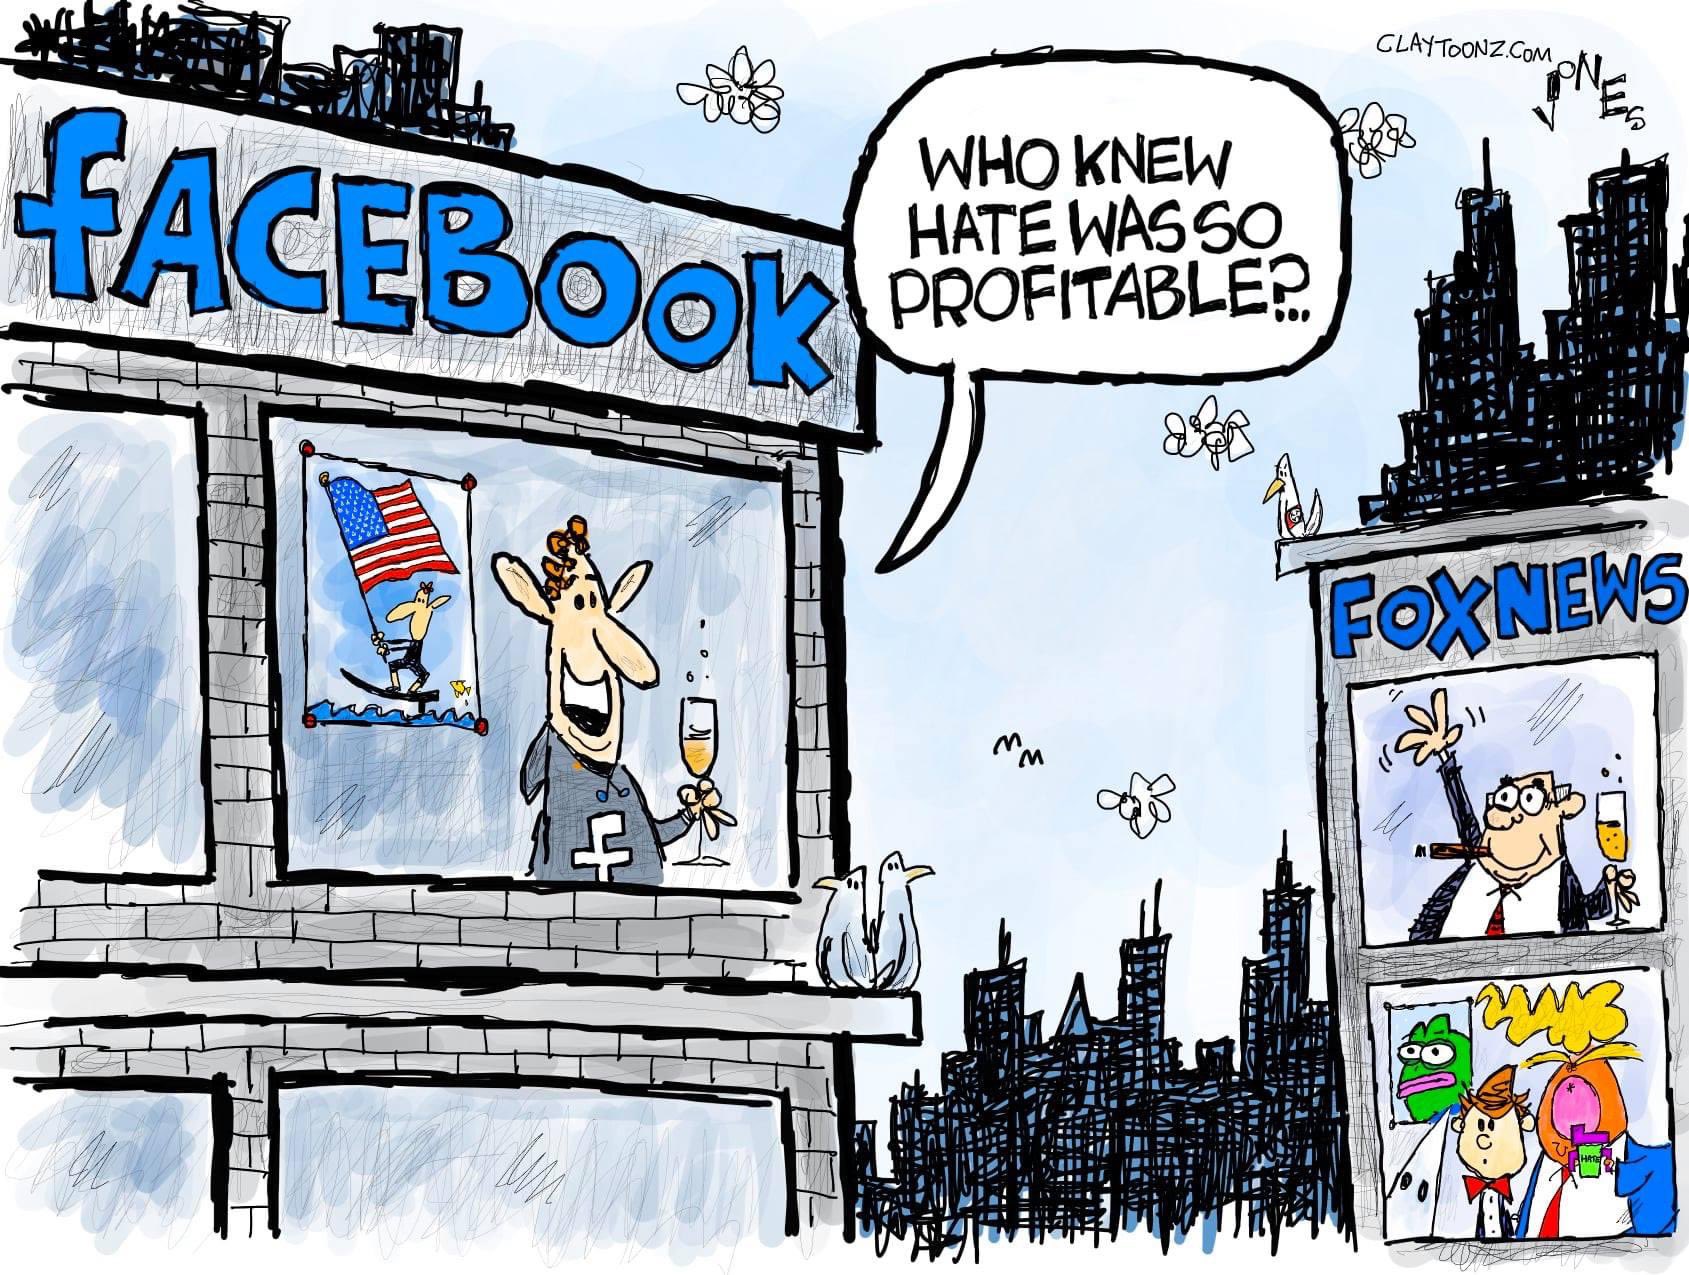 FB profits